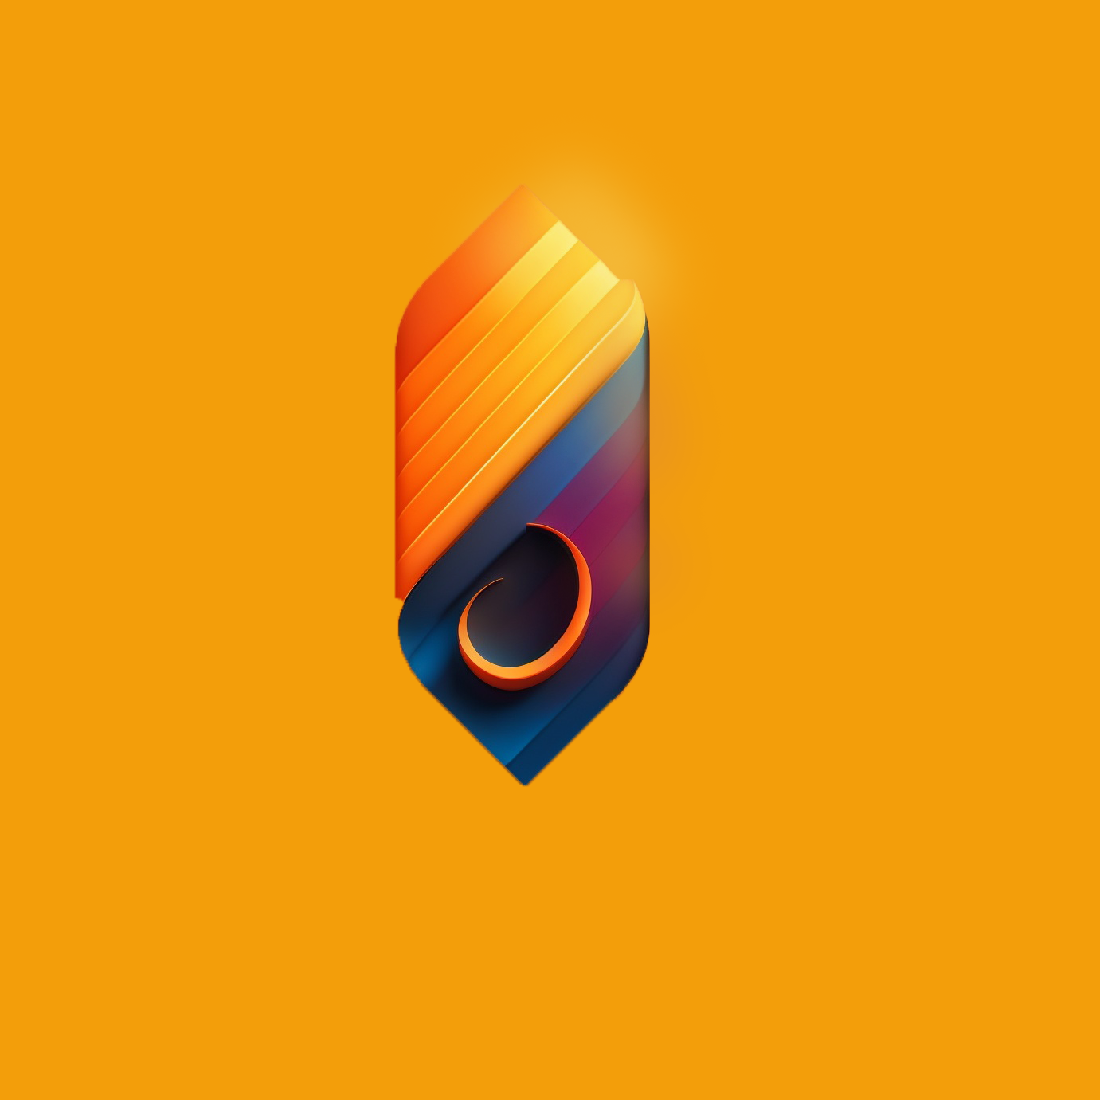 3D custom brand logo cover image.